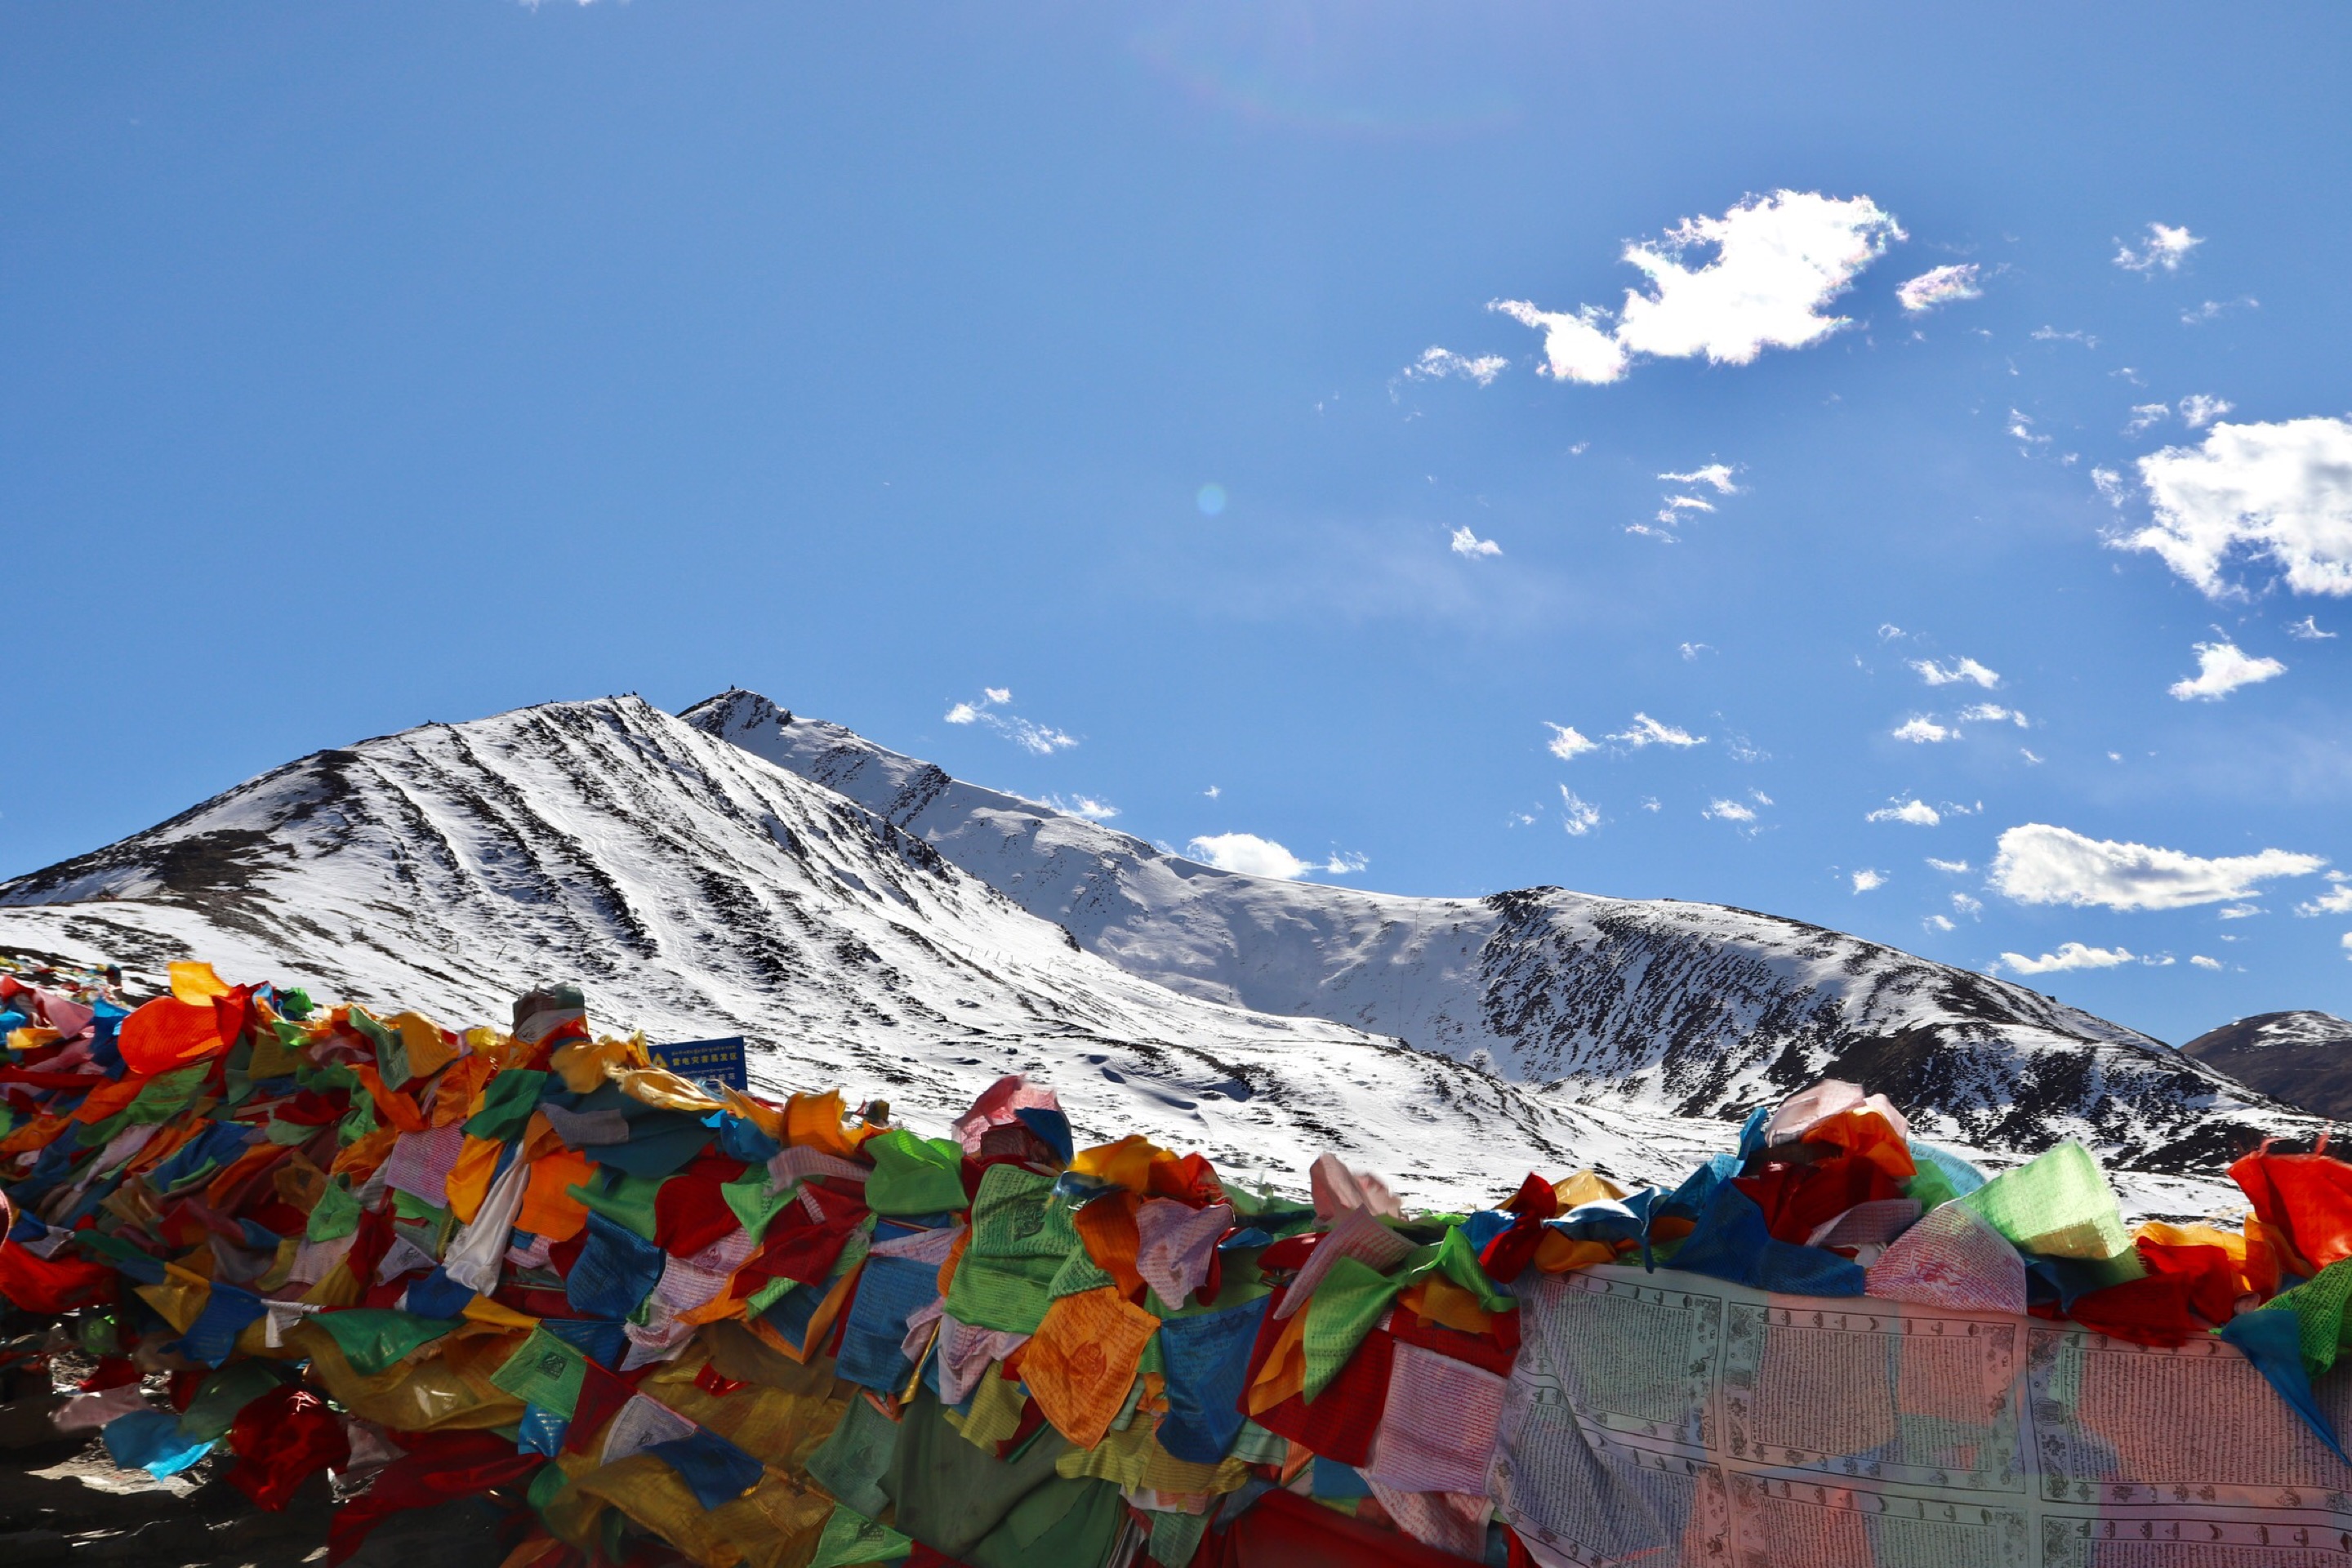 13天西藏自驾游 川藏线+青藏线 这才是我想要的西藏